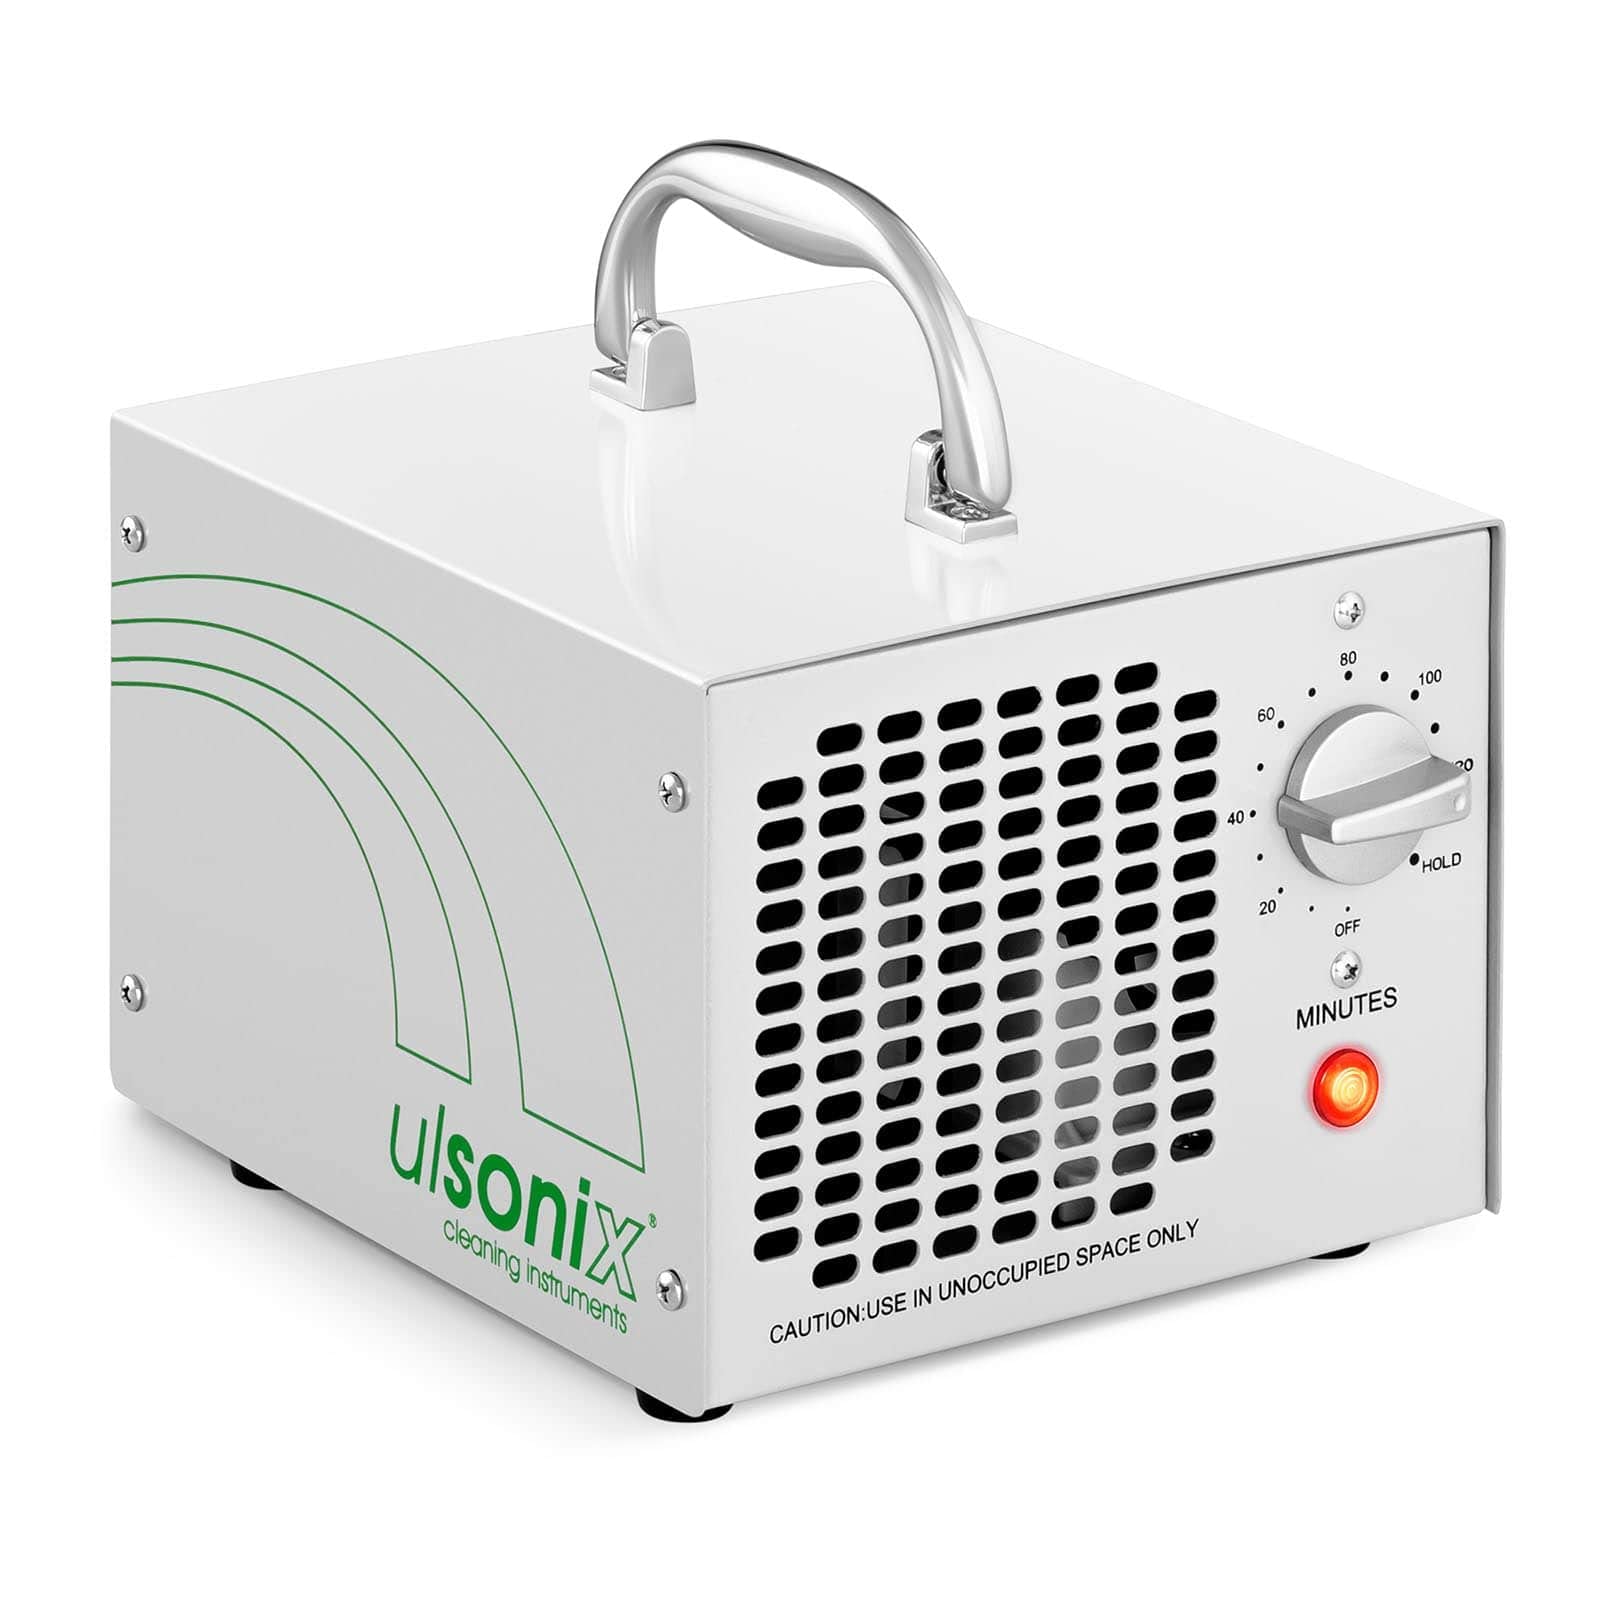 Ulsonix Ozongenerator Luftreiniger Ozongerät AIRCLEAN 5G-WL (5.000 mg/h, 65 W, Timer bis 120 min) für Zimmer, Rauch, Autos, Krankenhaus und Haustiere